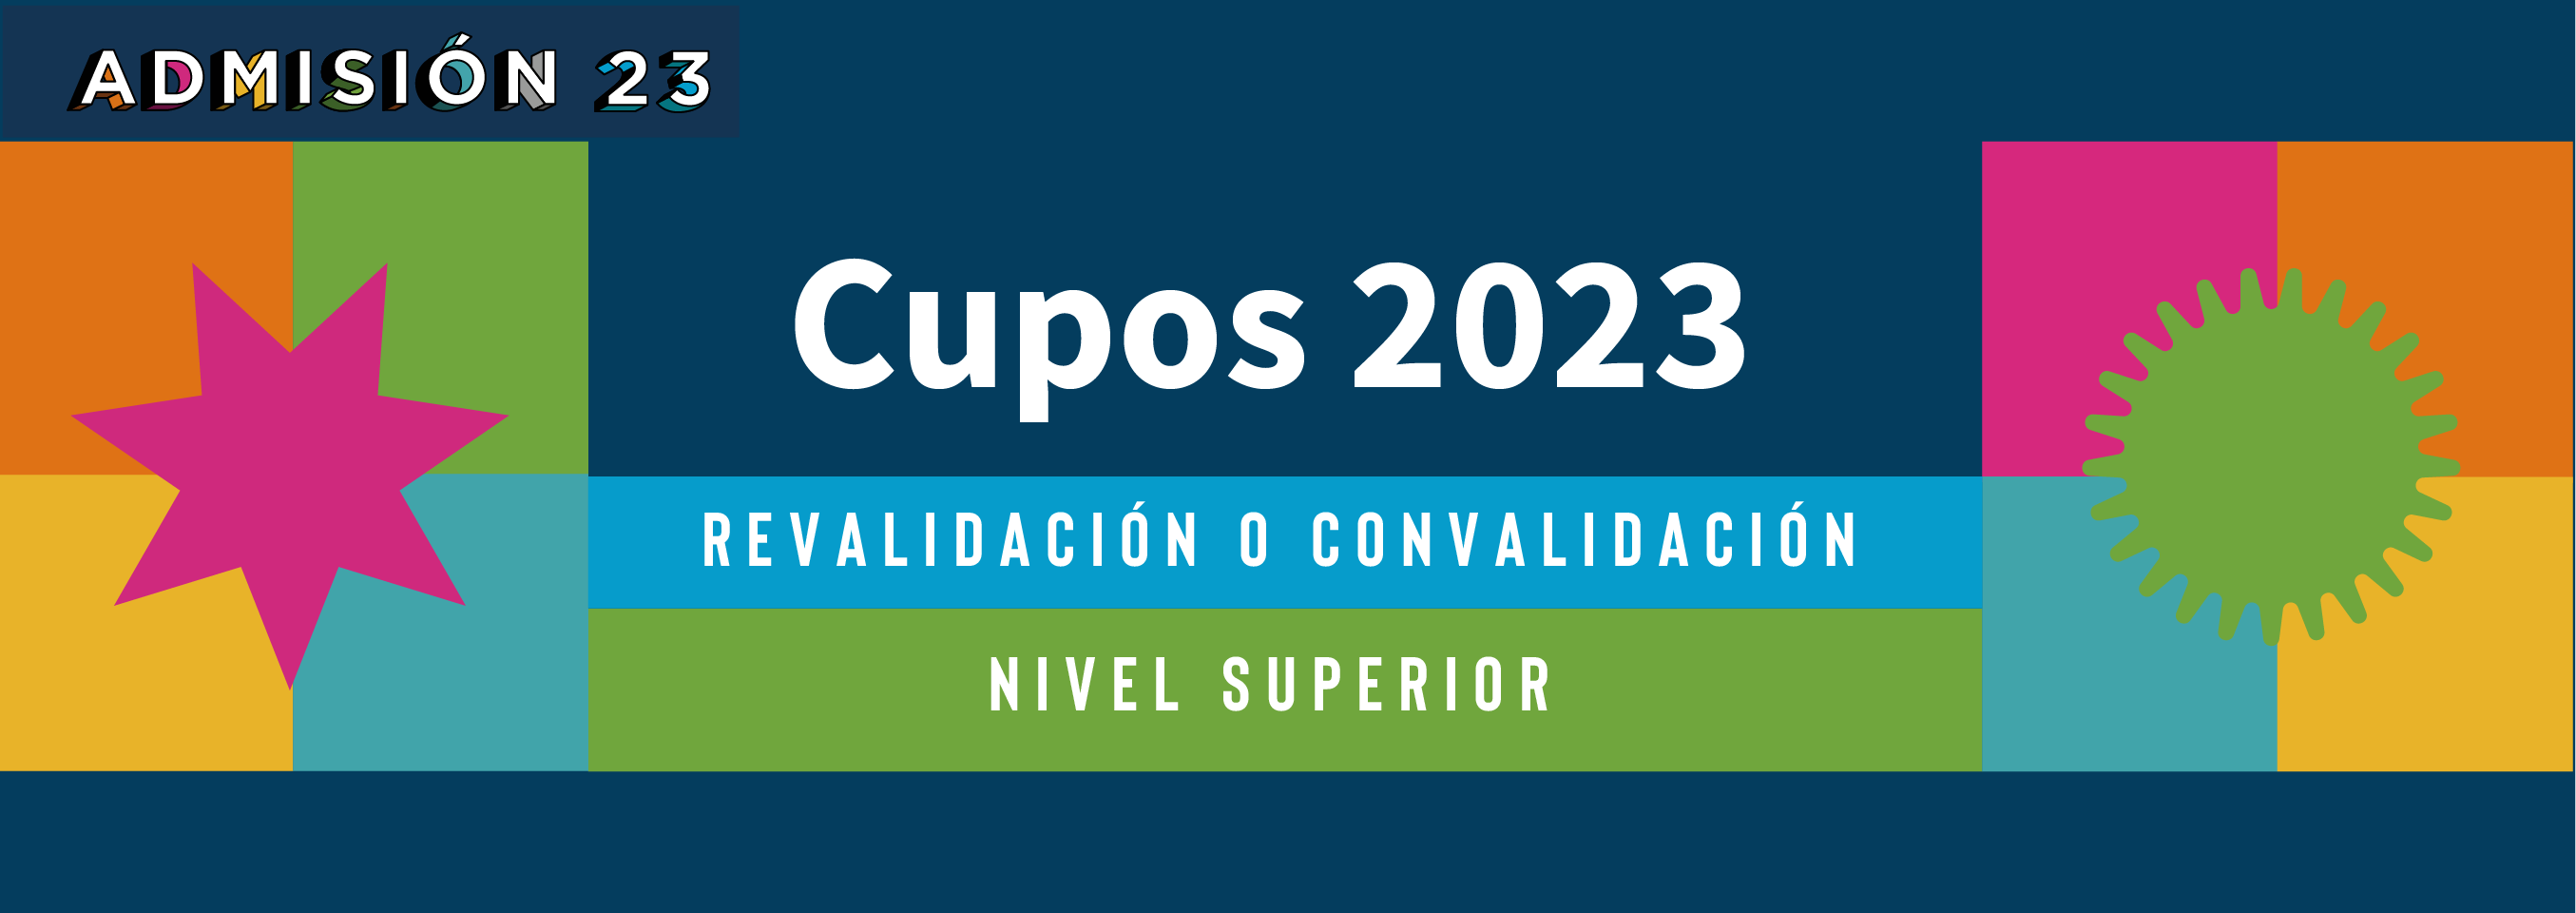 Cupos_Revalidacion_y_Convalidacion_2023